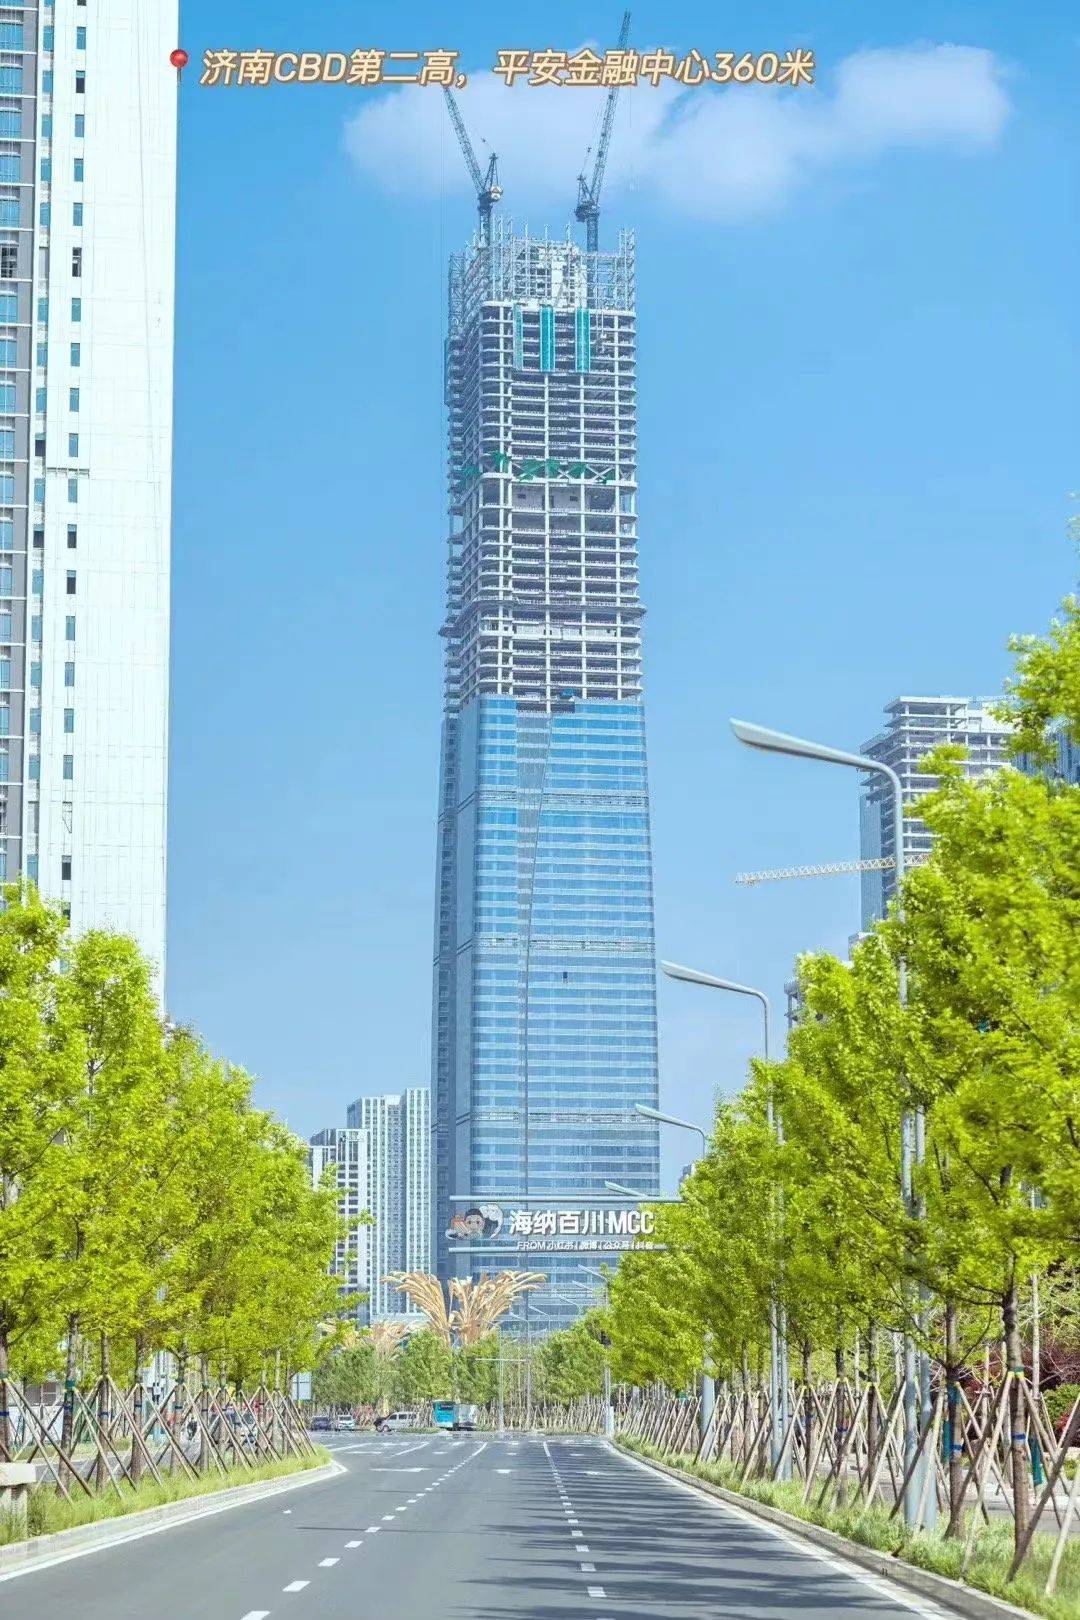 428米细数济南历任第一高楼